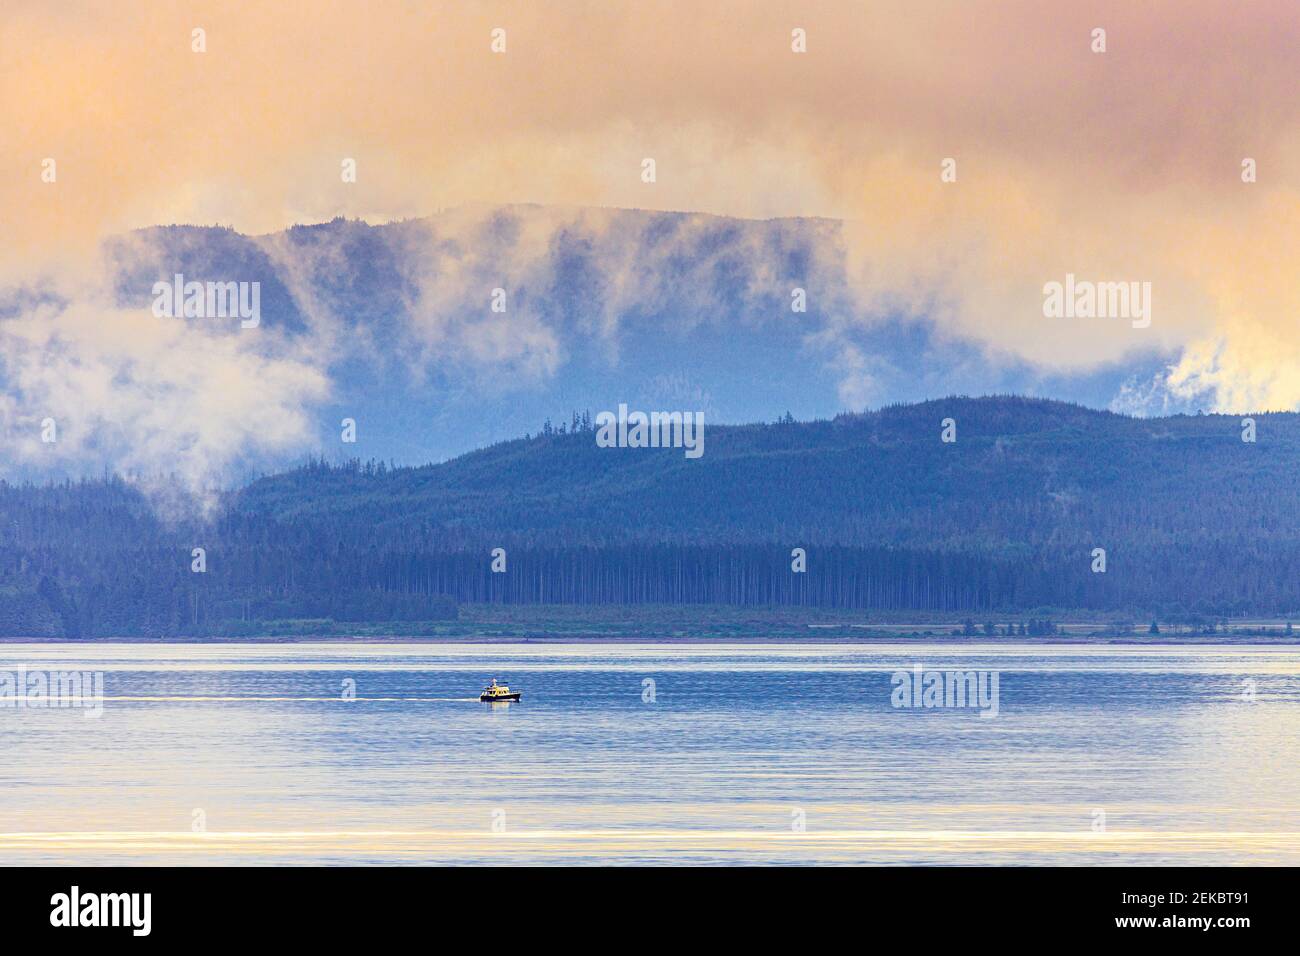 En Alert Bay, en el extremo norte de la isla de Vancouver, Columbia Británica, Canadá - visto desde un crucero que navega por el Paso Interior. Foto de stock